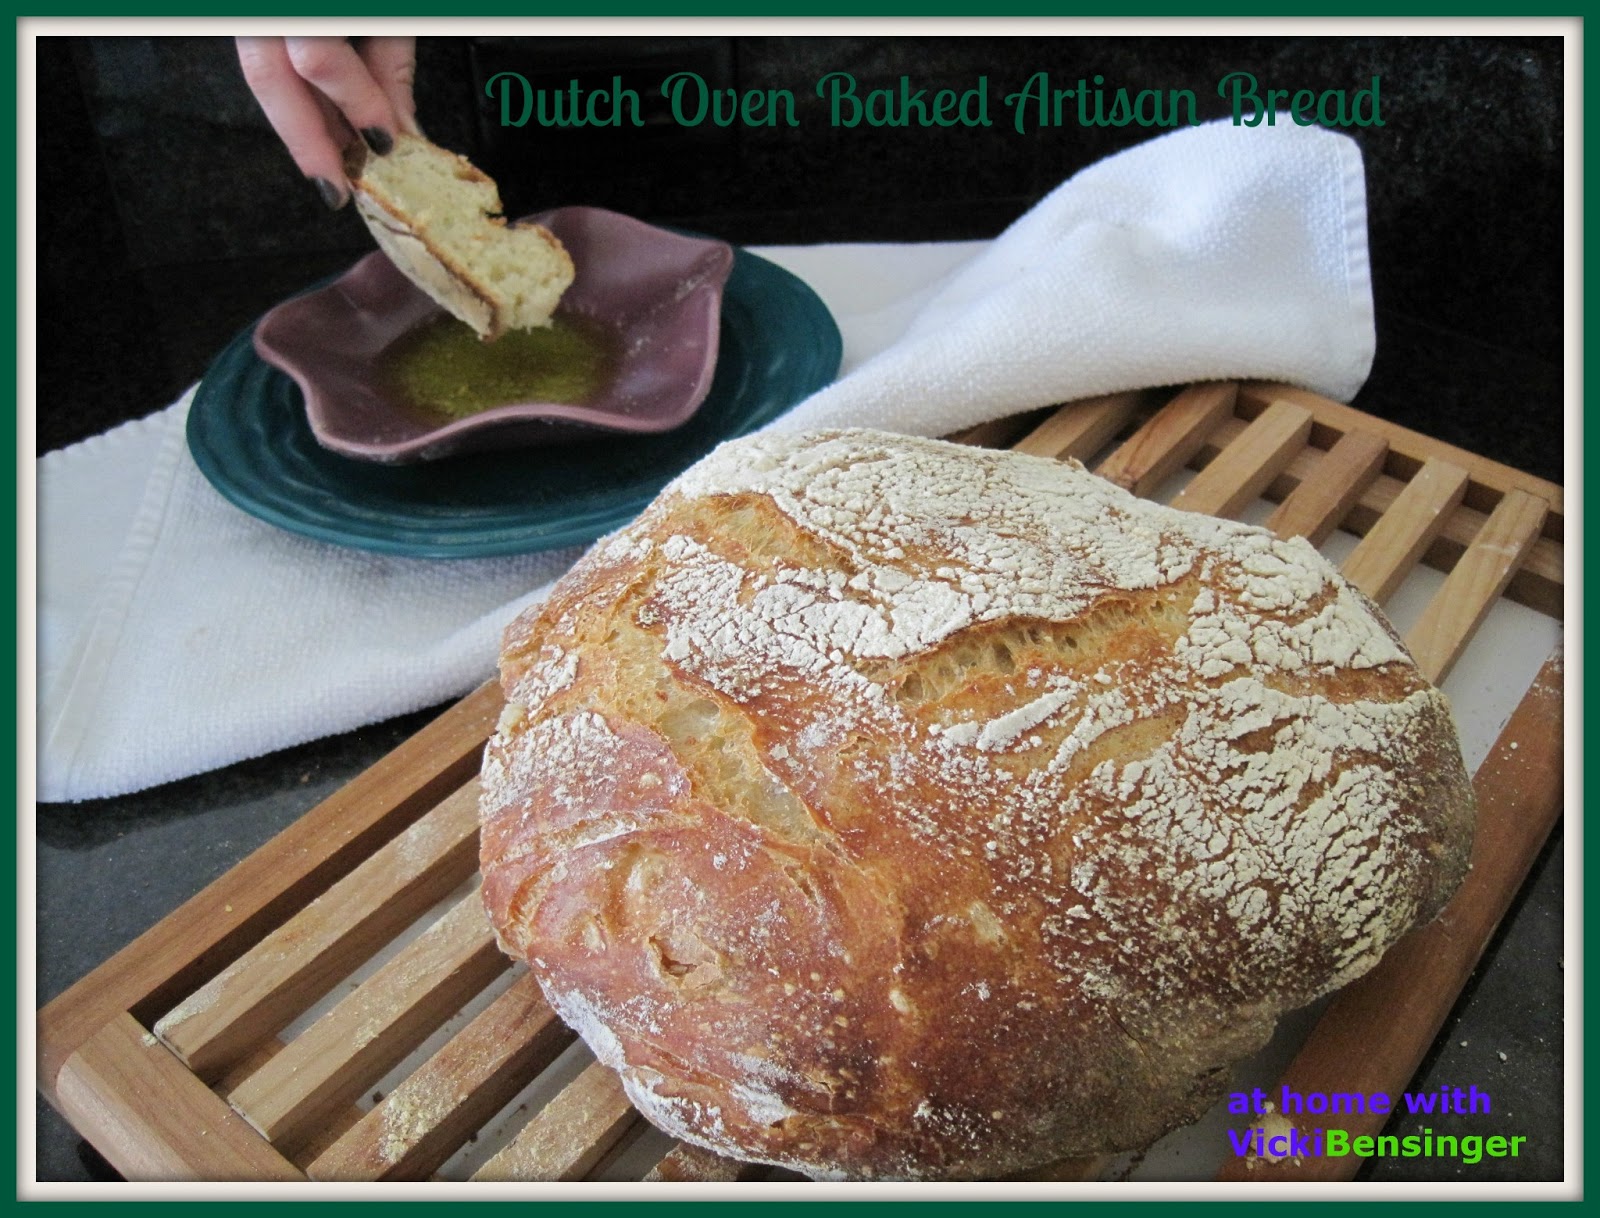 http://3.bp.blogspot.com/-4WA-mDkZZV4/UUJspNzM2QI/AAAAAAAACmc/m1Z8WQg3ftY/s1600/Dutch+Oven+Baked+Artisan+Bread.jpg